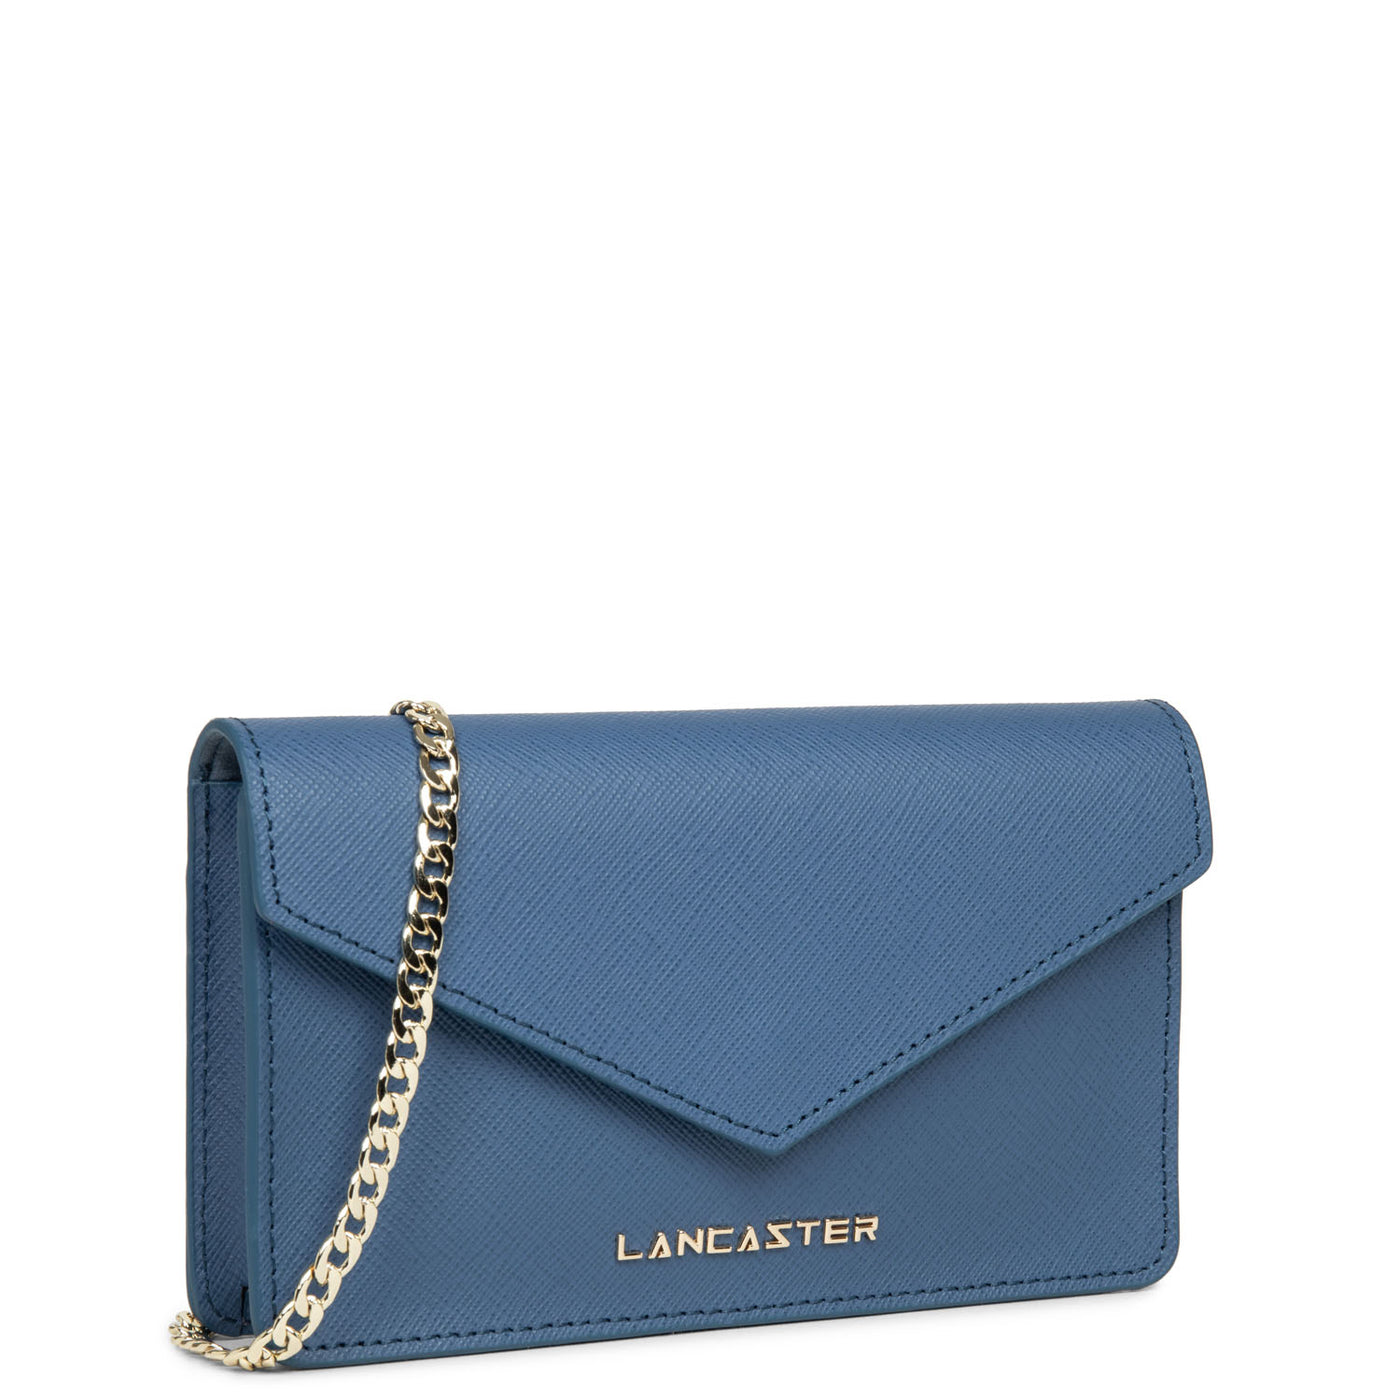 petit sac trotteur - saffiano signature #couleur_bleu-jeans